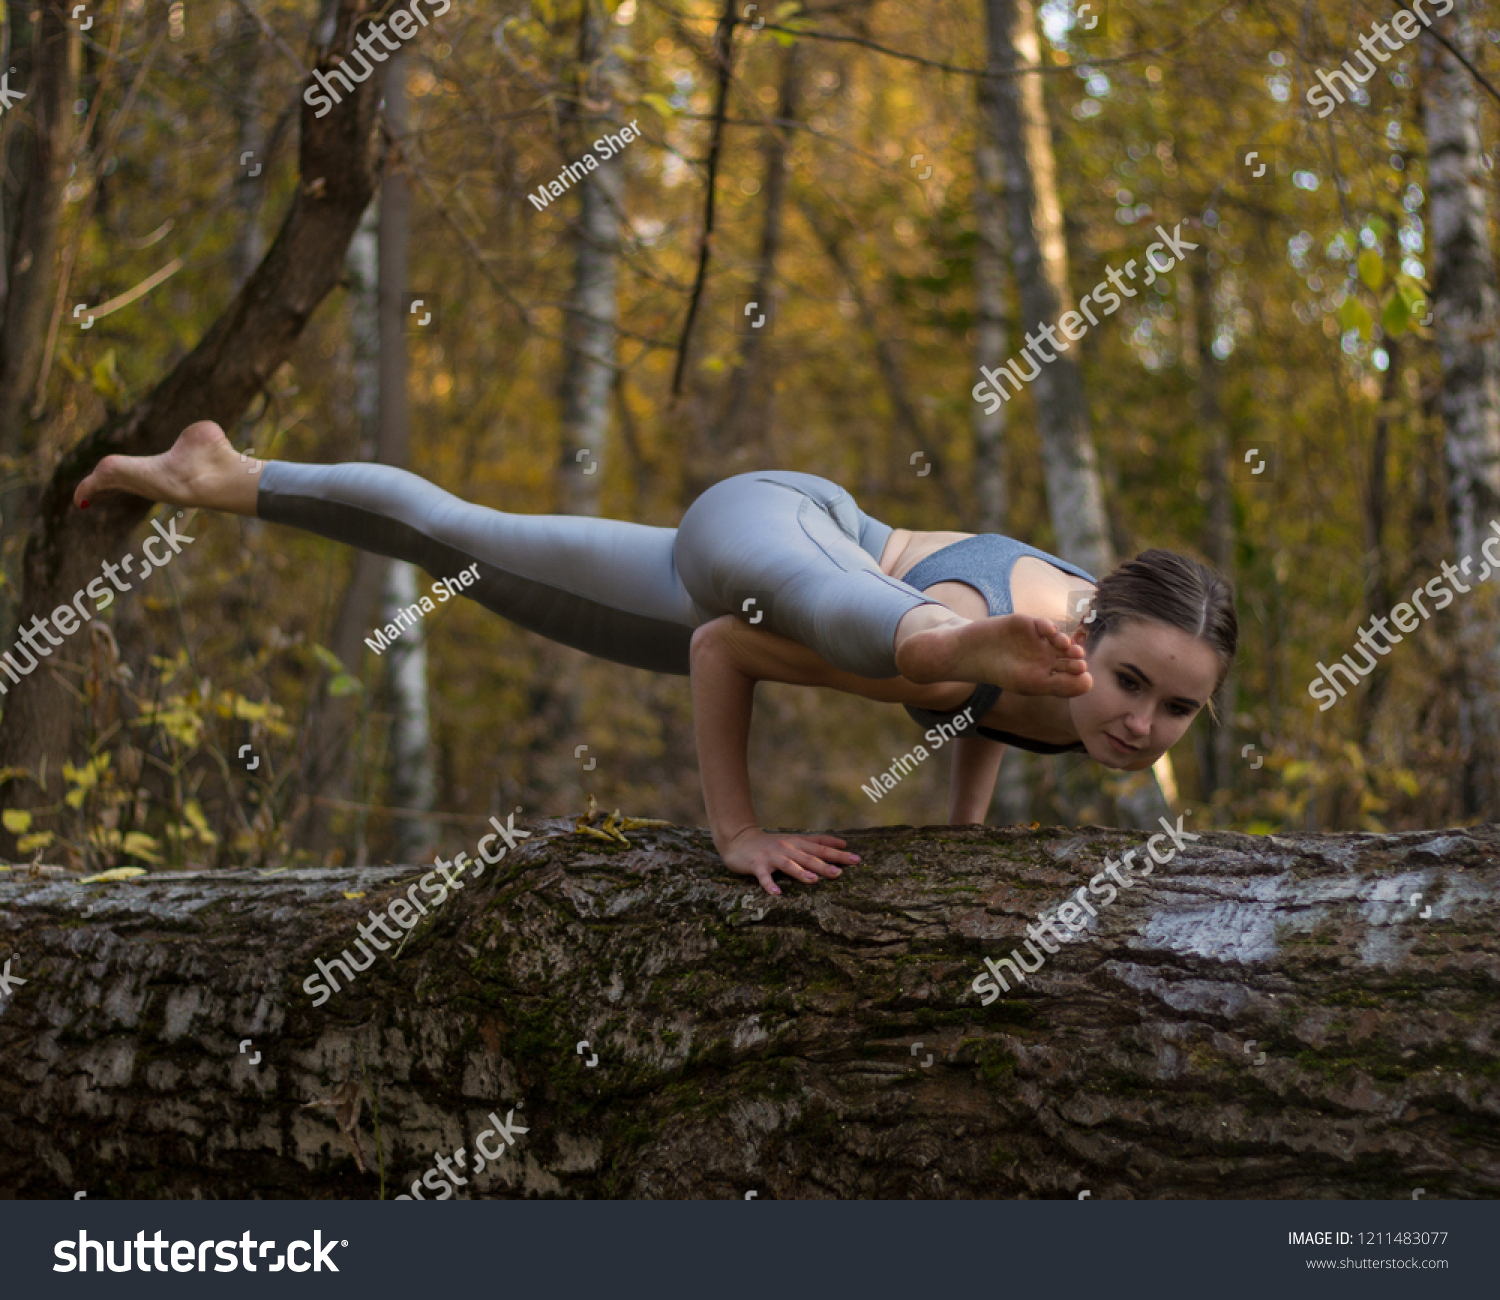 https://image.shutterstock.com/z/stock-photo-girl-doing-yoga-exercise-on-the-tree-1211483077.jpg